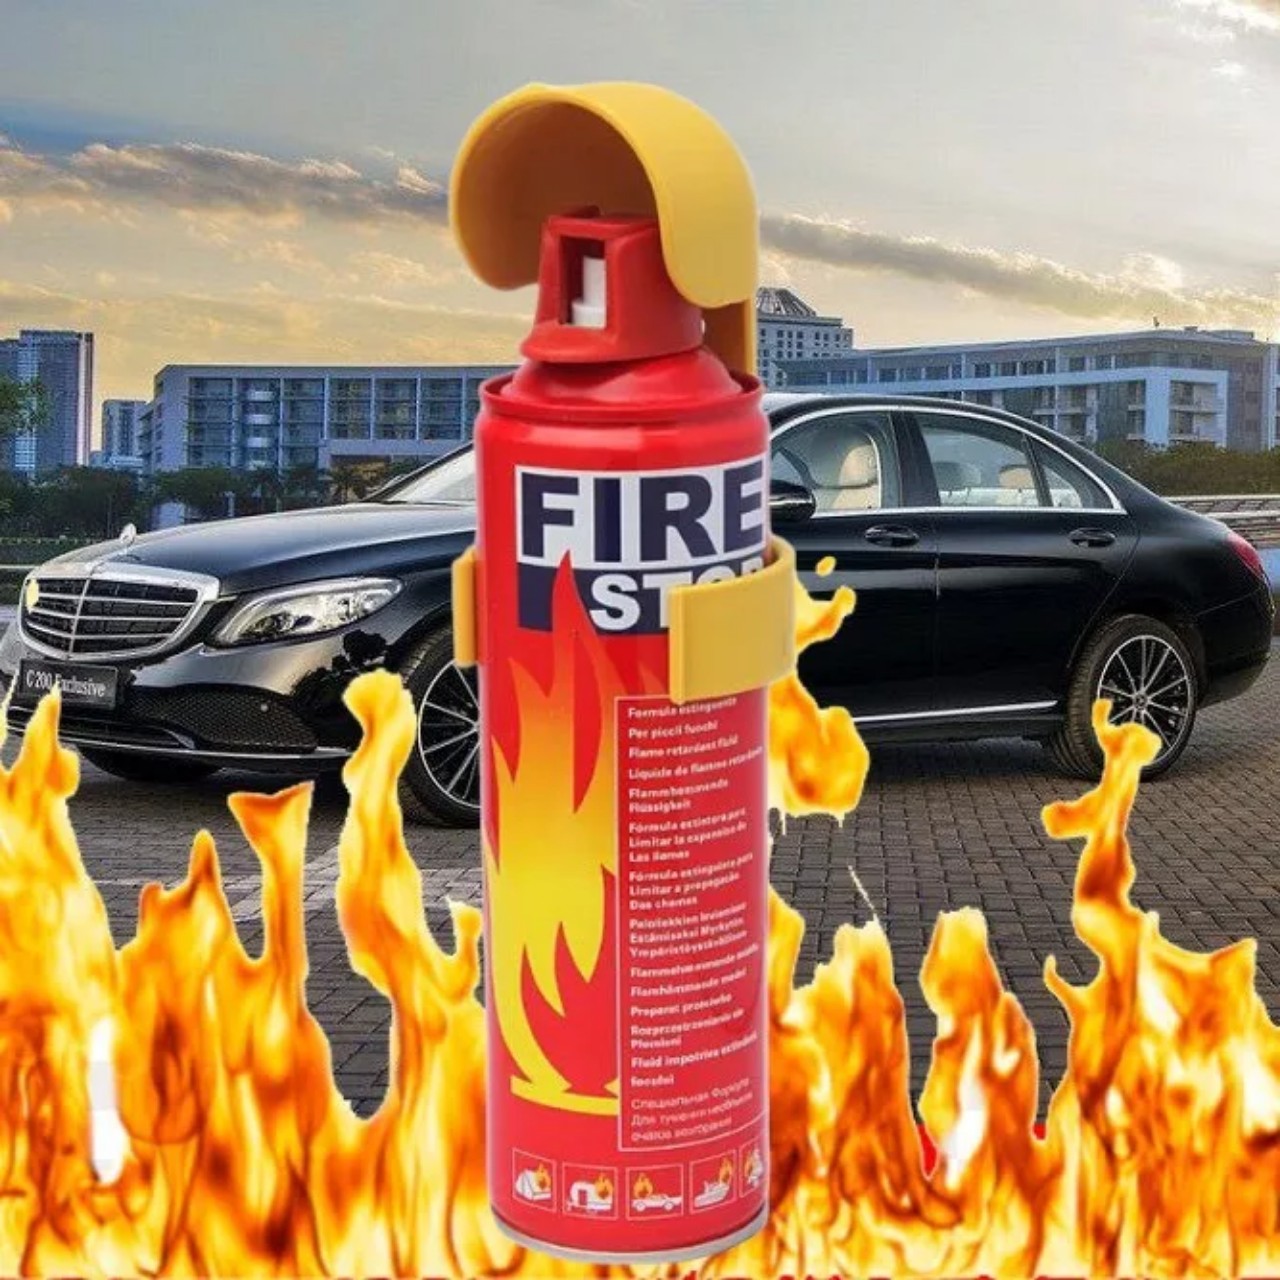 Bình Cứu Hỏa FIRE Stop - Bình Chữa Cháy Mini - Dập Lửa Khẩn Cấp Ô Tô, Xe Máy, Văn Phòng - An Toàn loại tốt